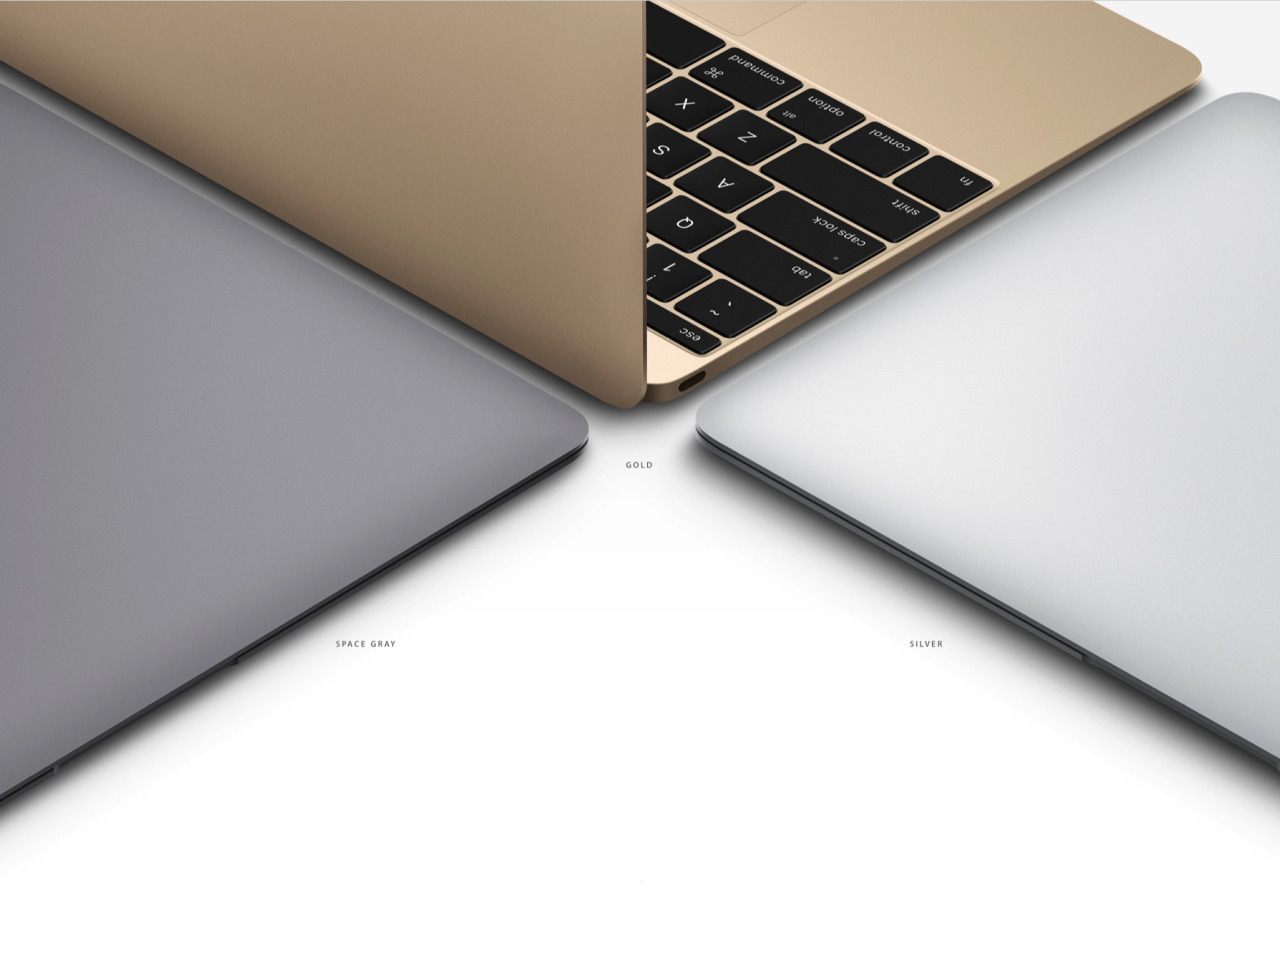 apple macbook 2016 specs